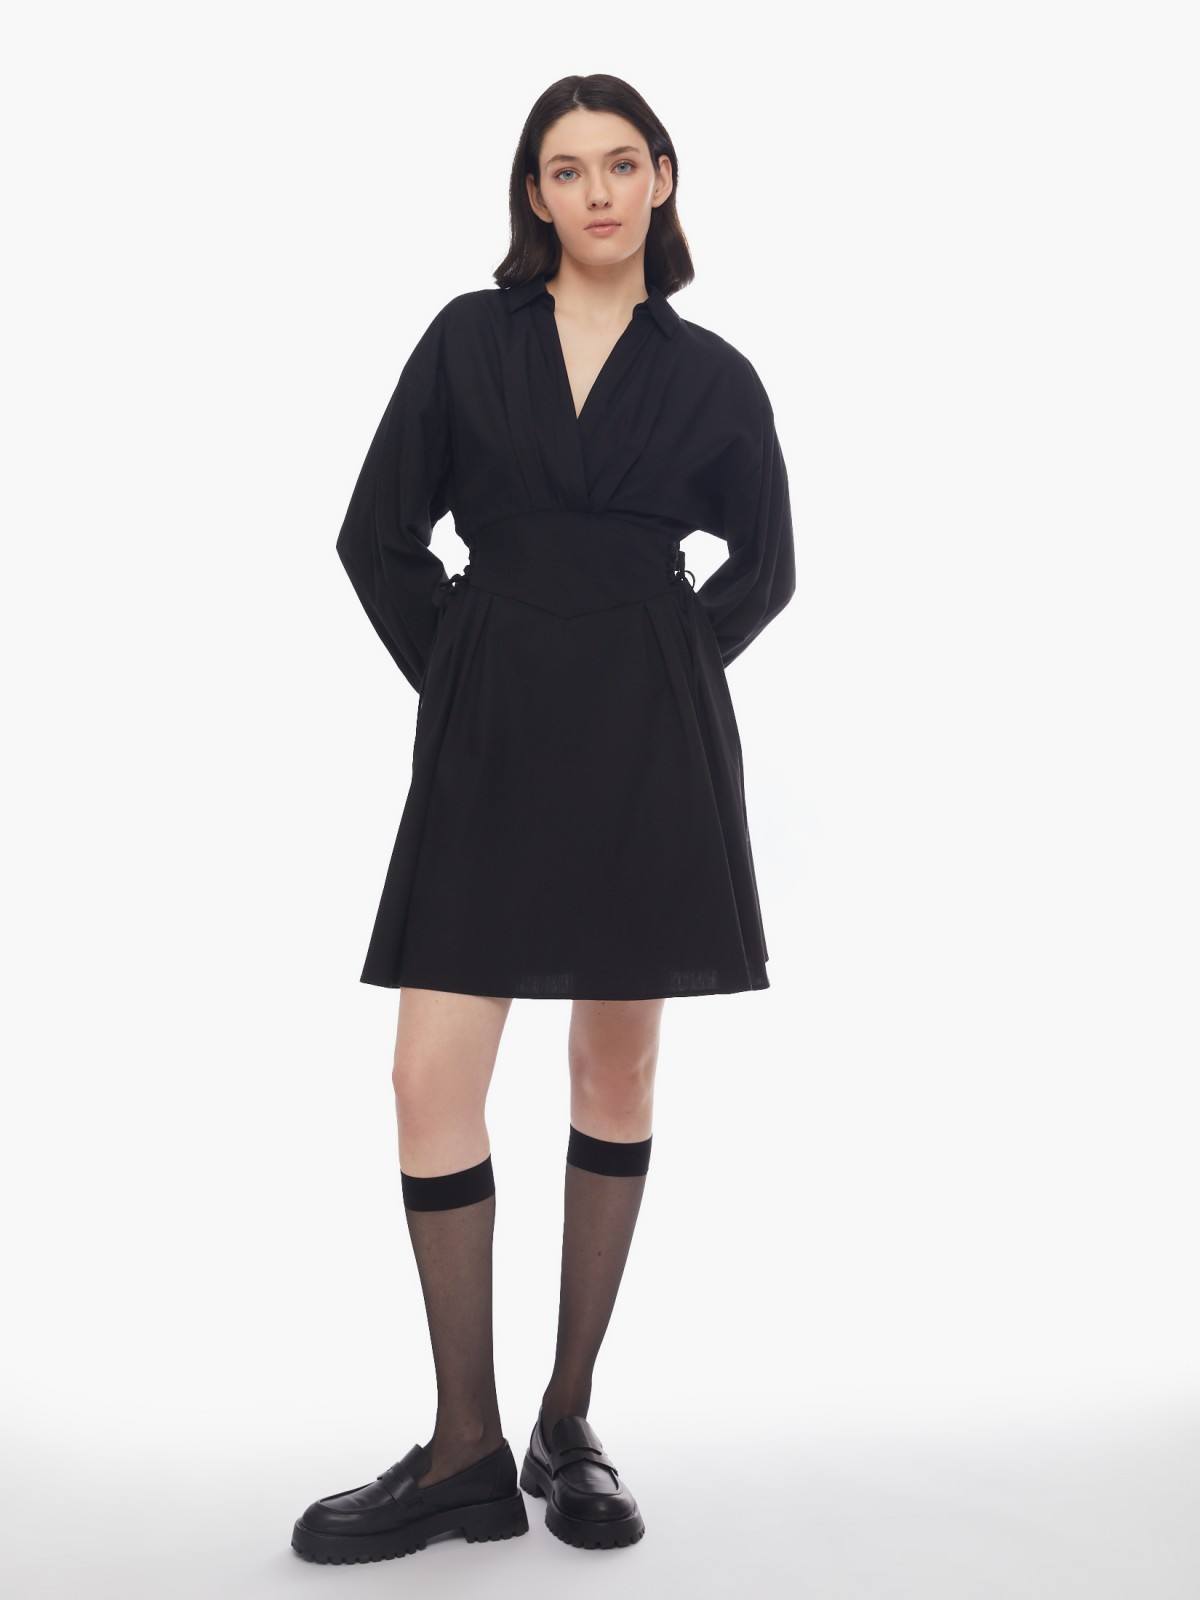 Платье длины мини из хлопка со шнуровкой на талии zolla 024138239291, цвет черный, размер XS - фото 2